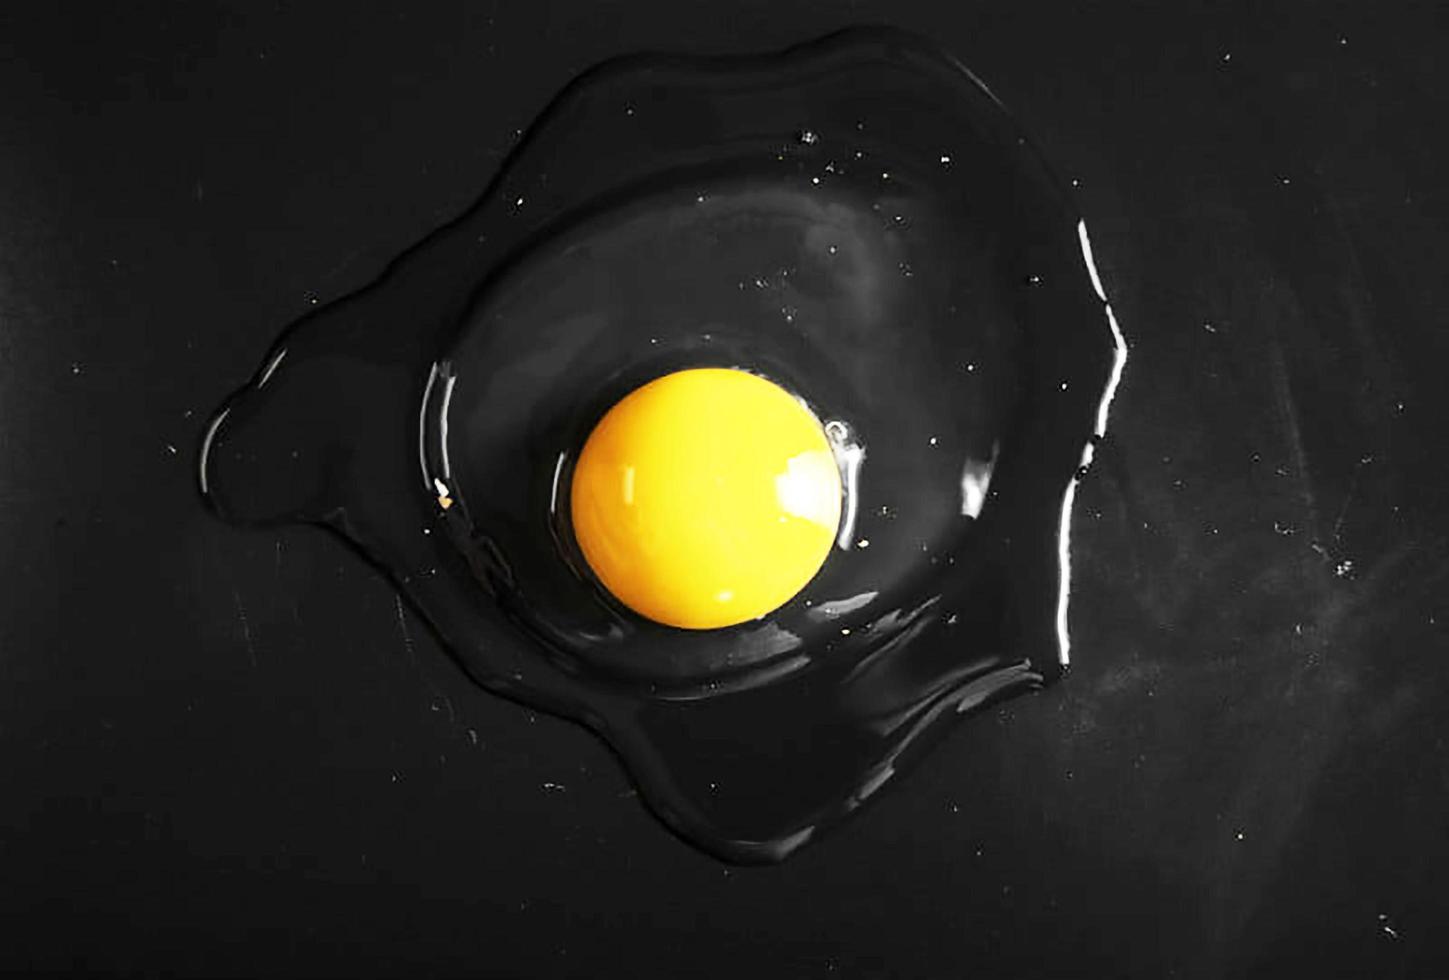 ovo de galinha quebrado em uma pedra escura foto